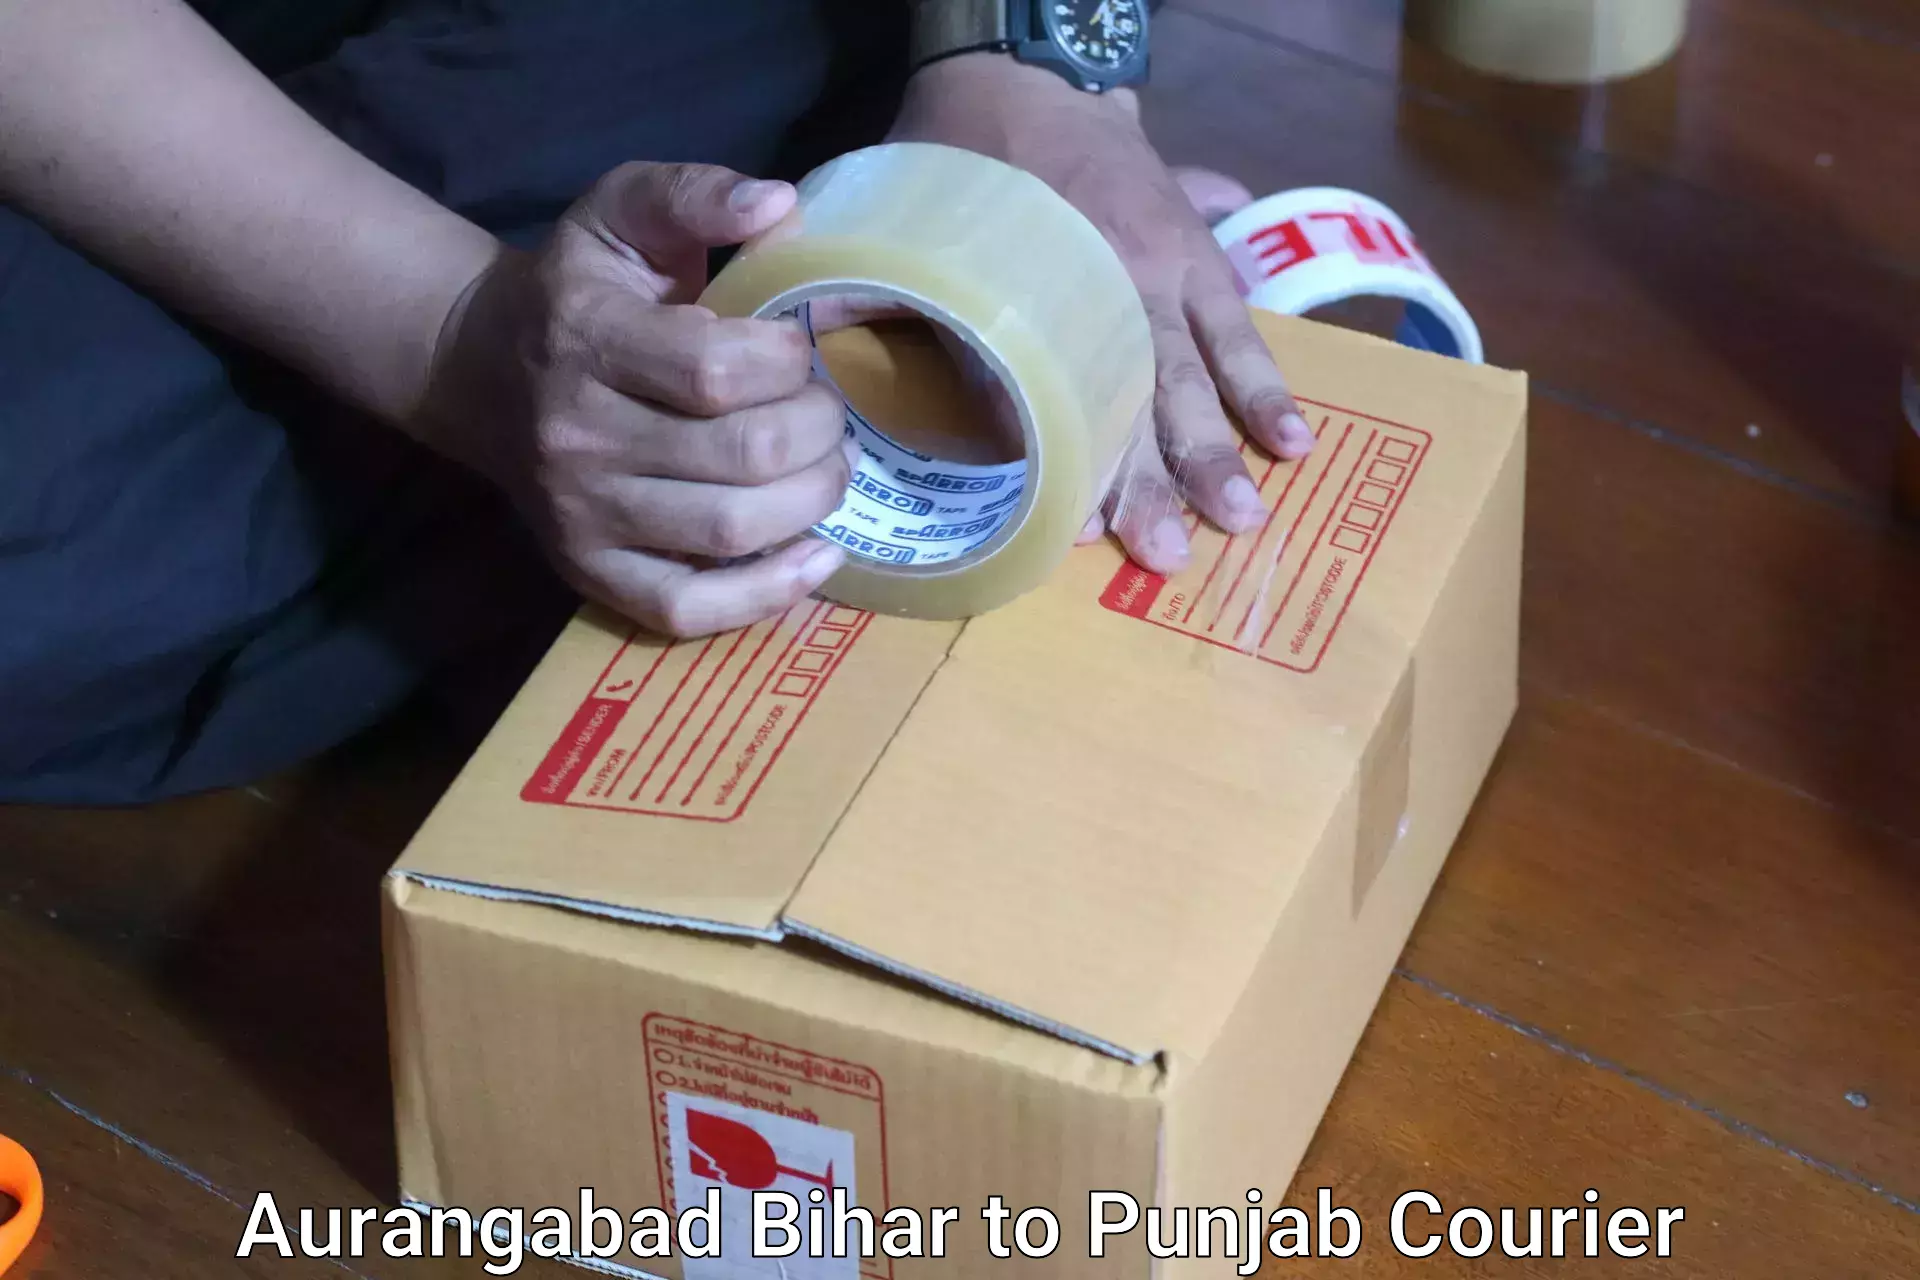 Luggage shipping options Aurangabad Bihar to Punjab